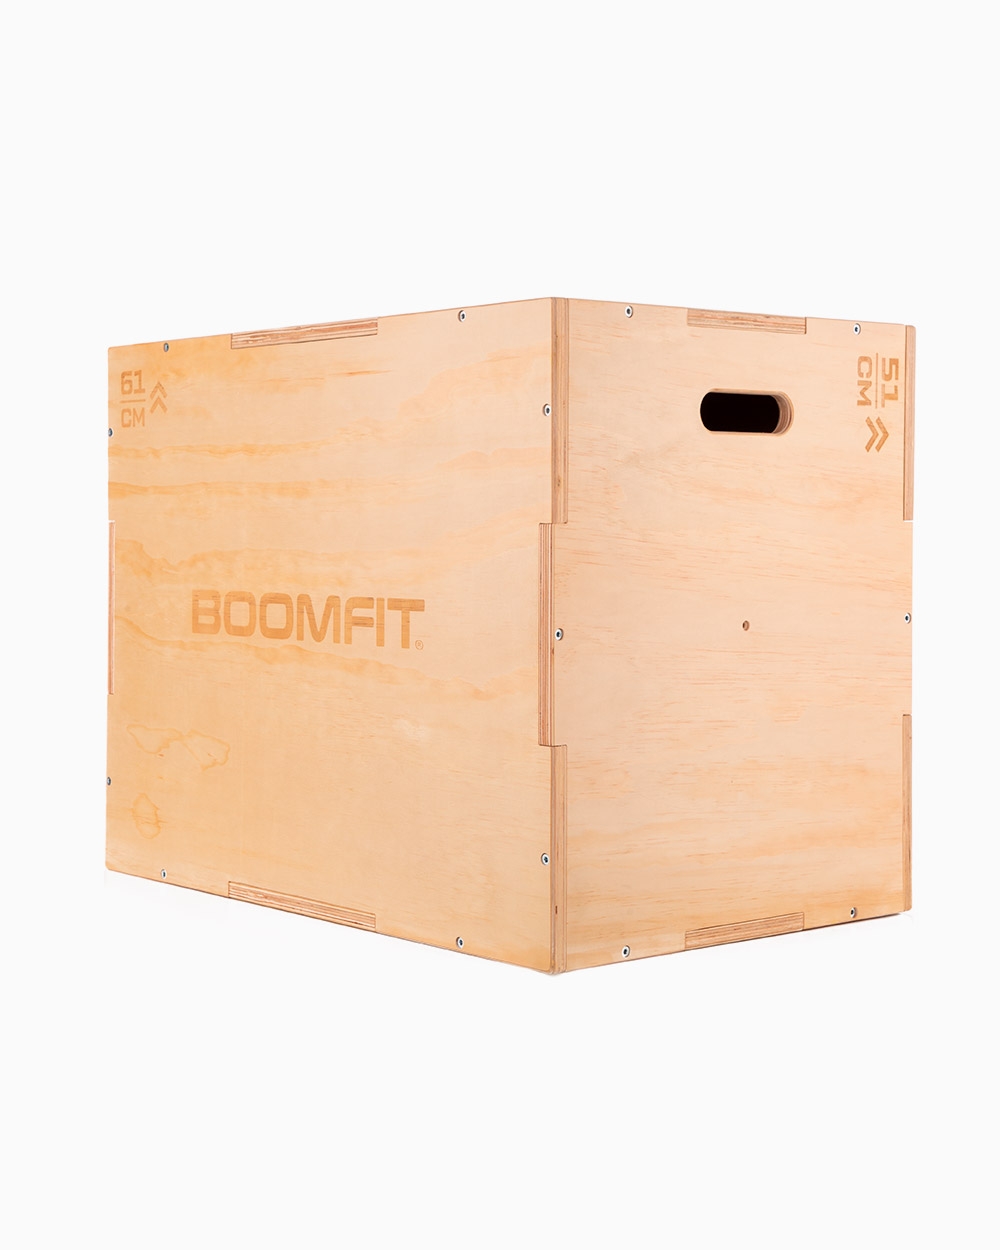 Cajón Pliométrico Boomfit Madera - marron - 